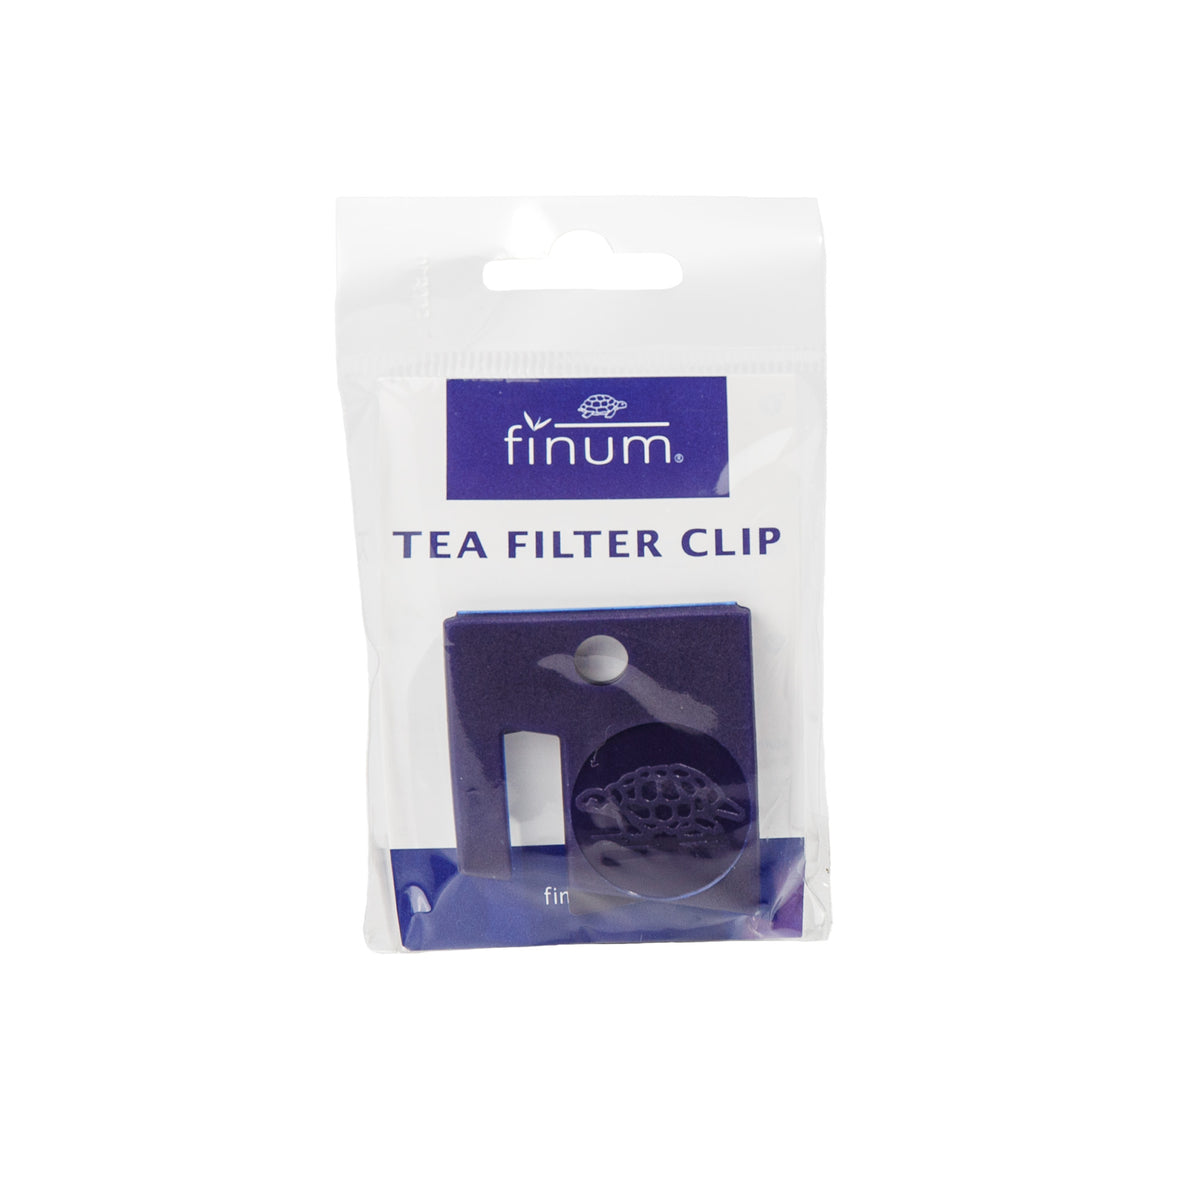 Primary image of Finum Tea Filter Clip